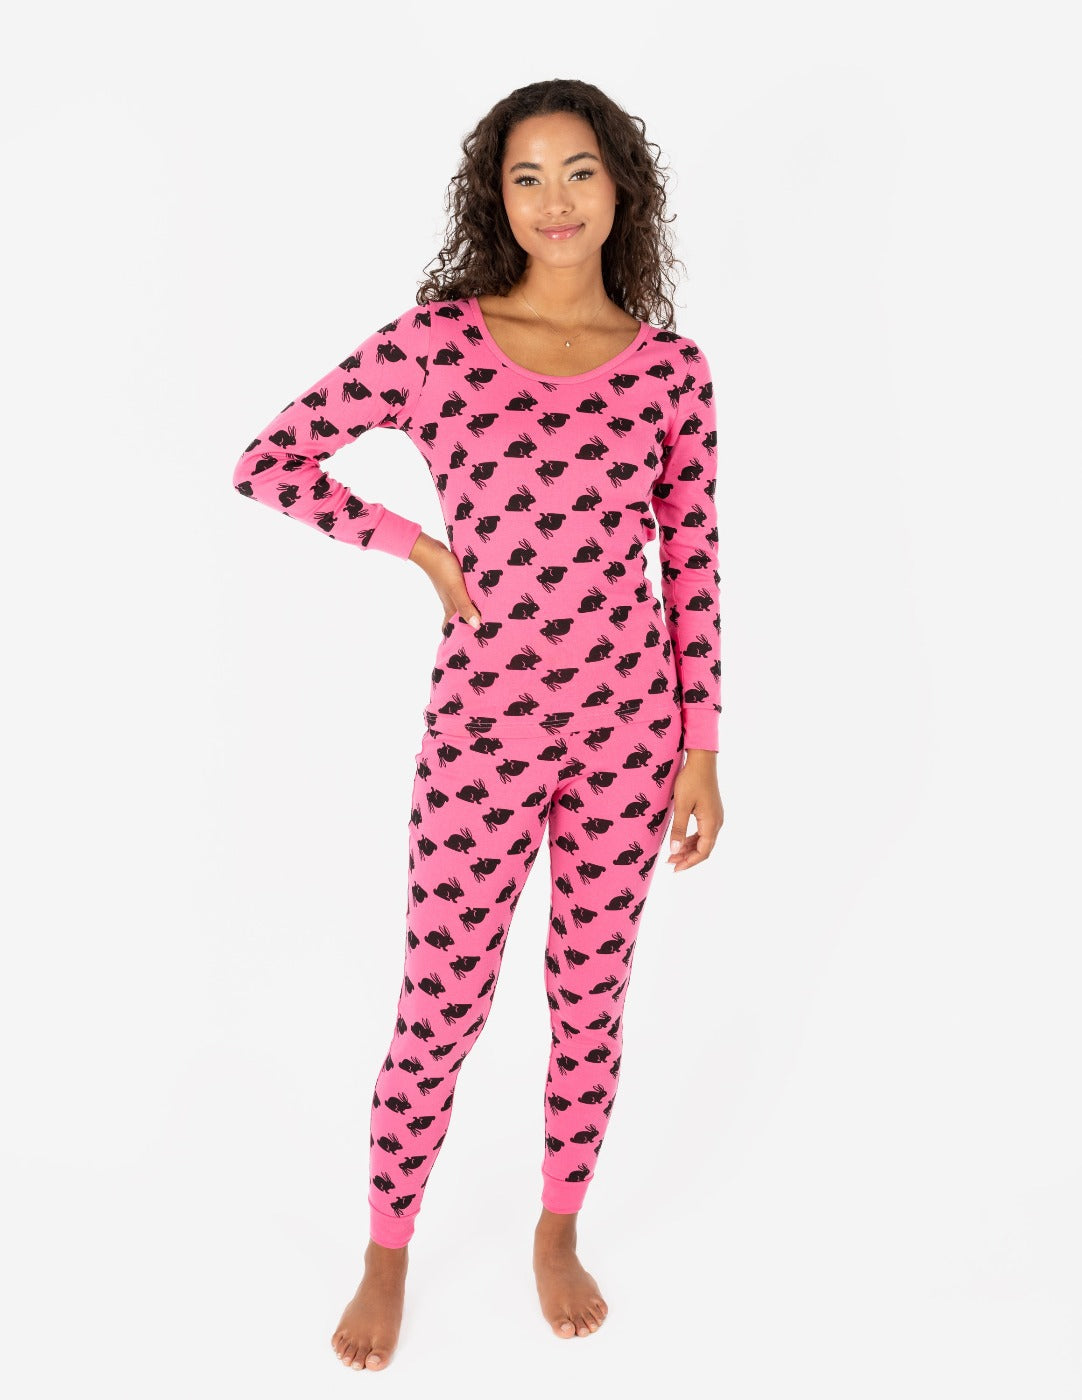 Women's Hot Pink Cotton Bunny Pajamas